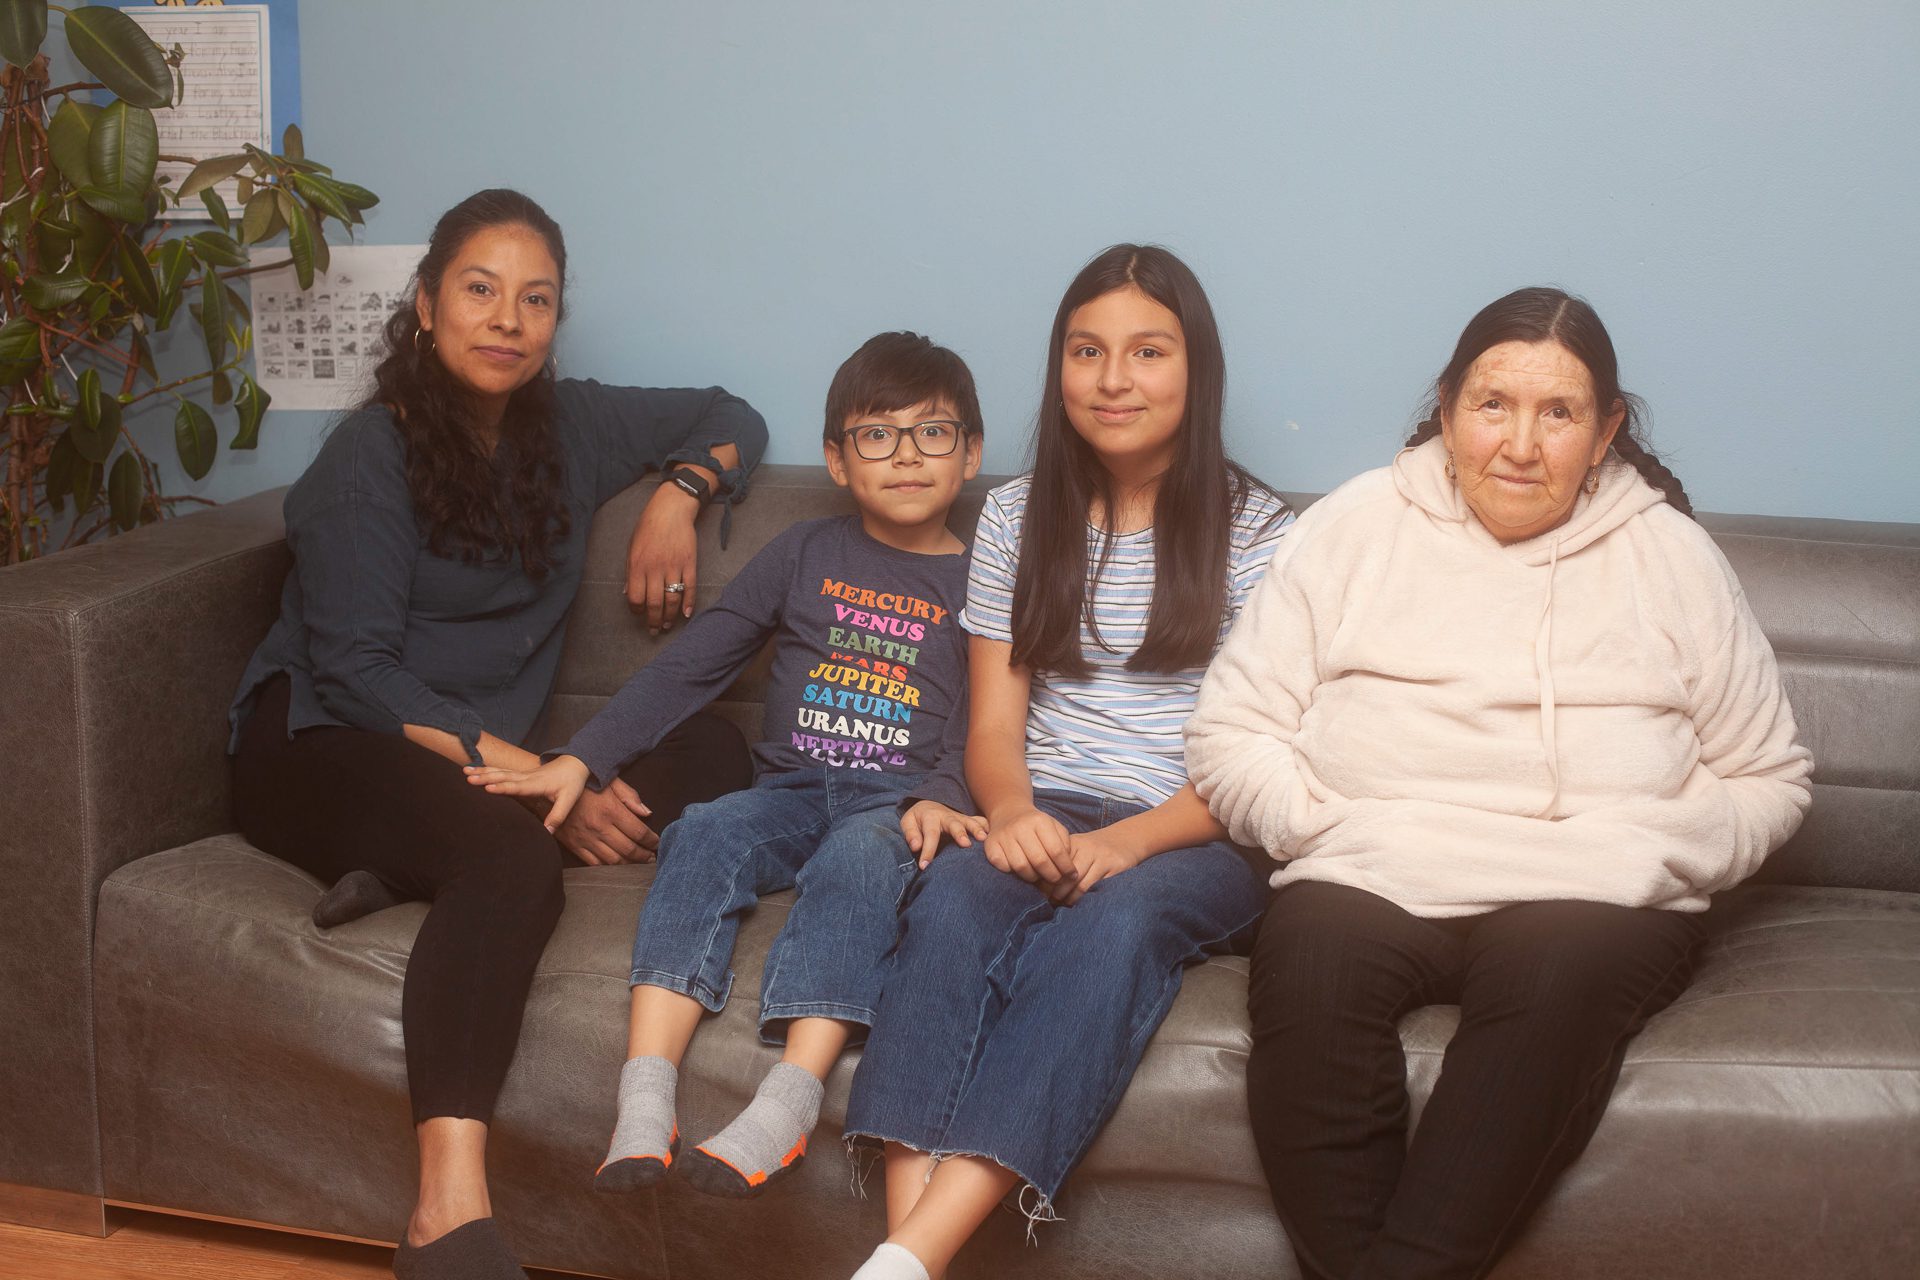 Una madre, sus dos hijos y su suegra están sentados en un sofá con una pared azul de fondo. El hijo menor tiene una camiseta con los nombres de los planetas.